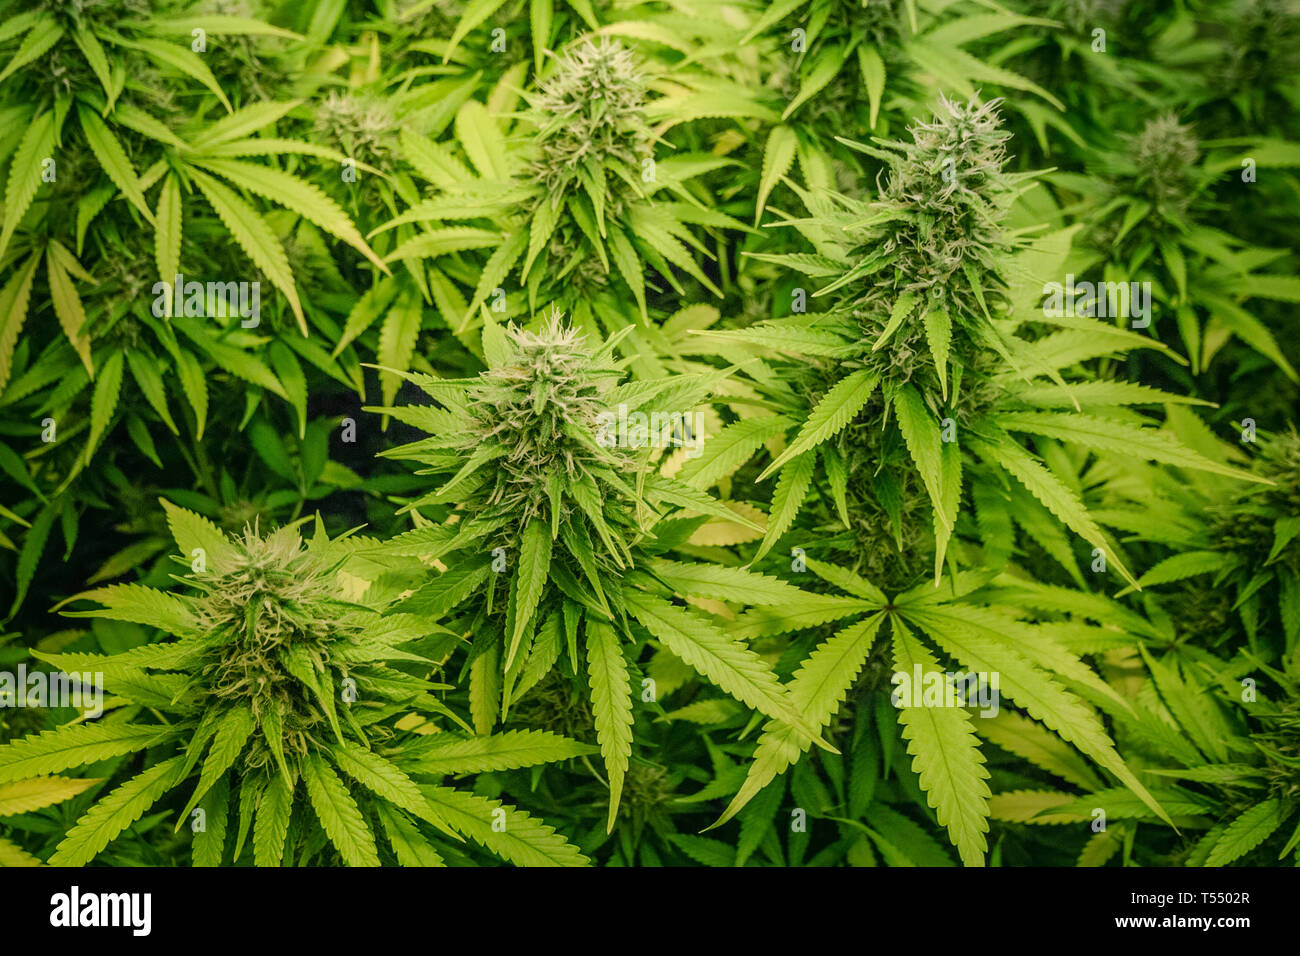 medical marijuana plants growing indoor - cannabis farm Stock Photo